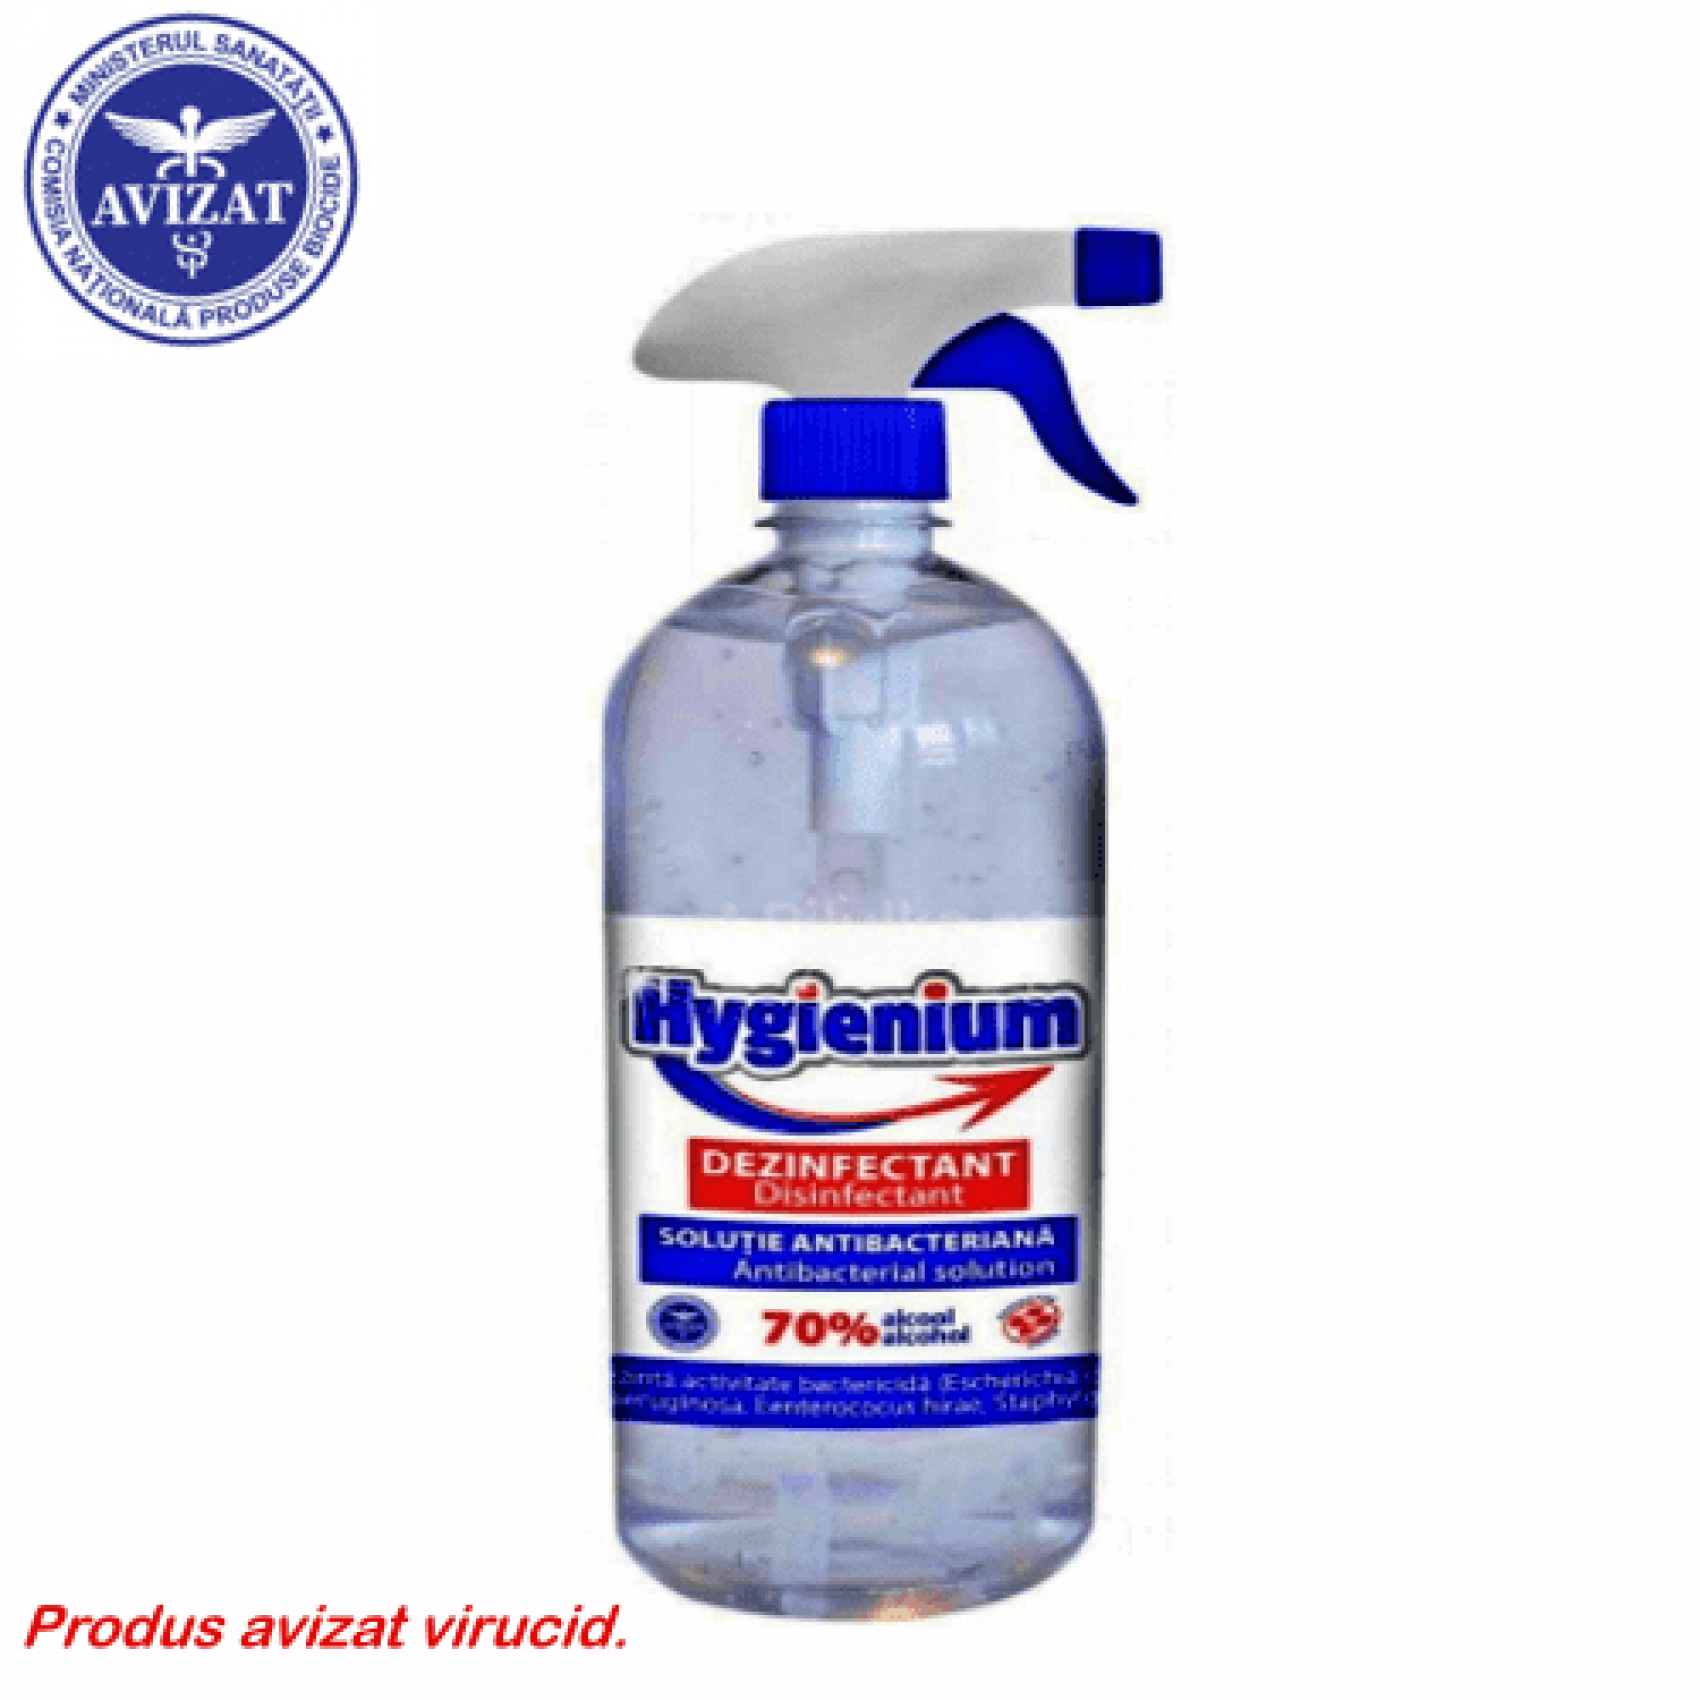 Hygienium dezinfectant virucid solutie pentru maini - 1000 ml